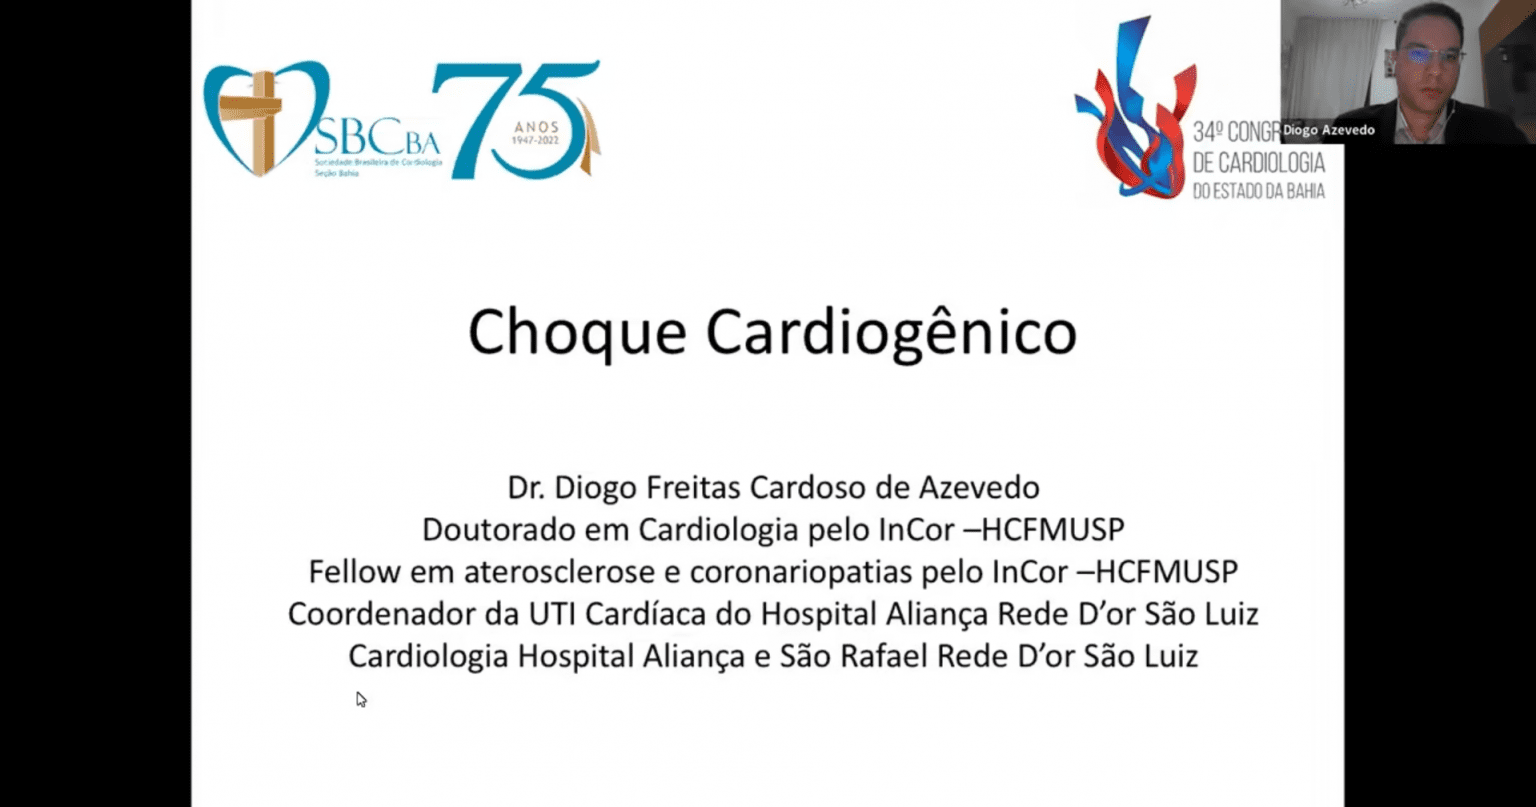 [Sbc Ba] Choque Cardiogênico: Diagnóstico E Tratamento Farmacológico - 06/05/2022